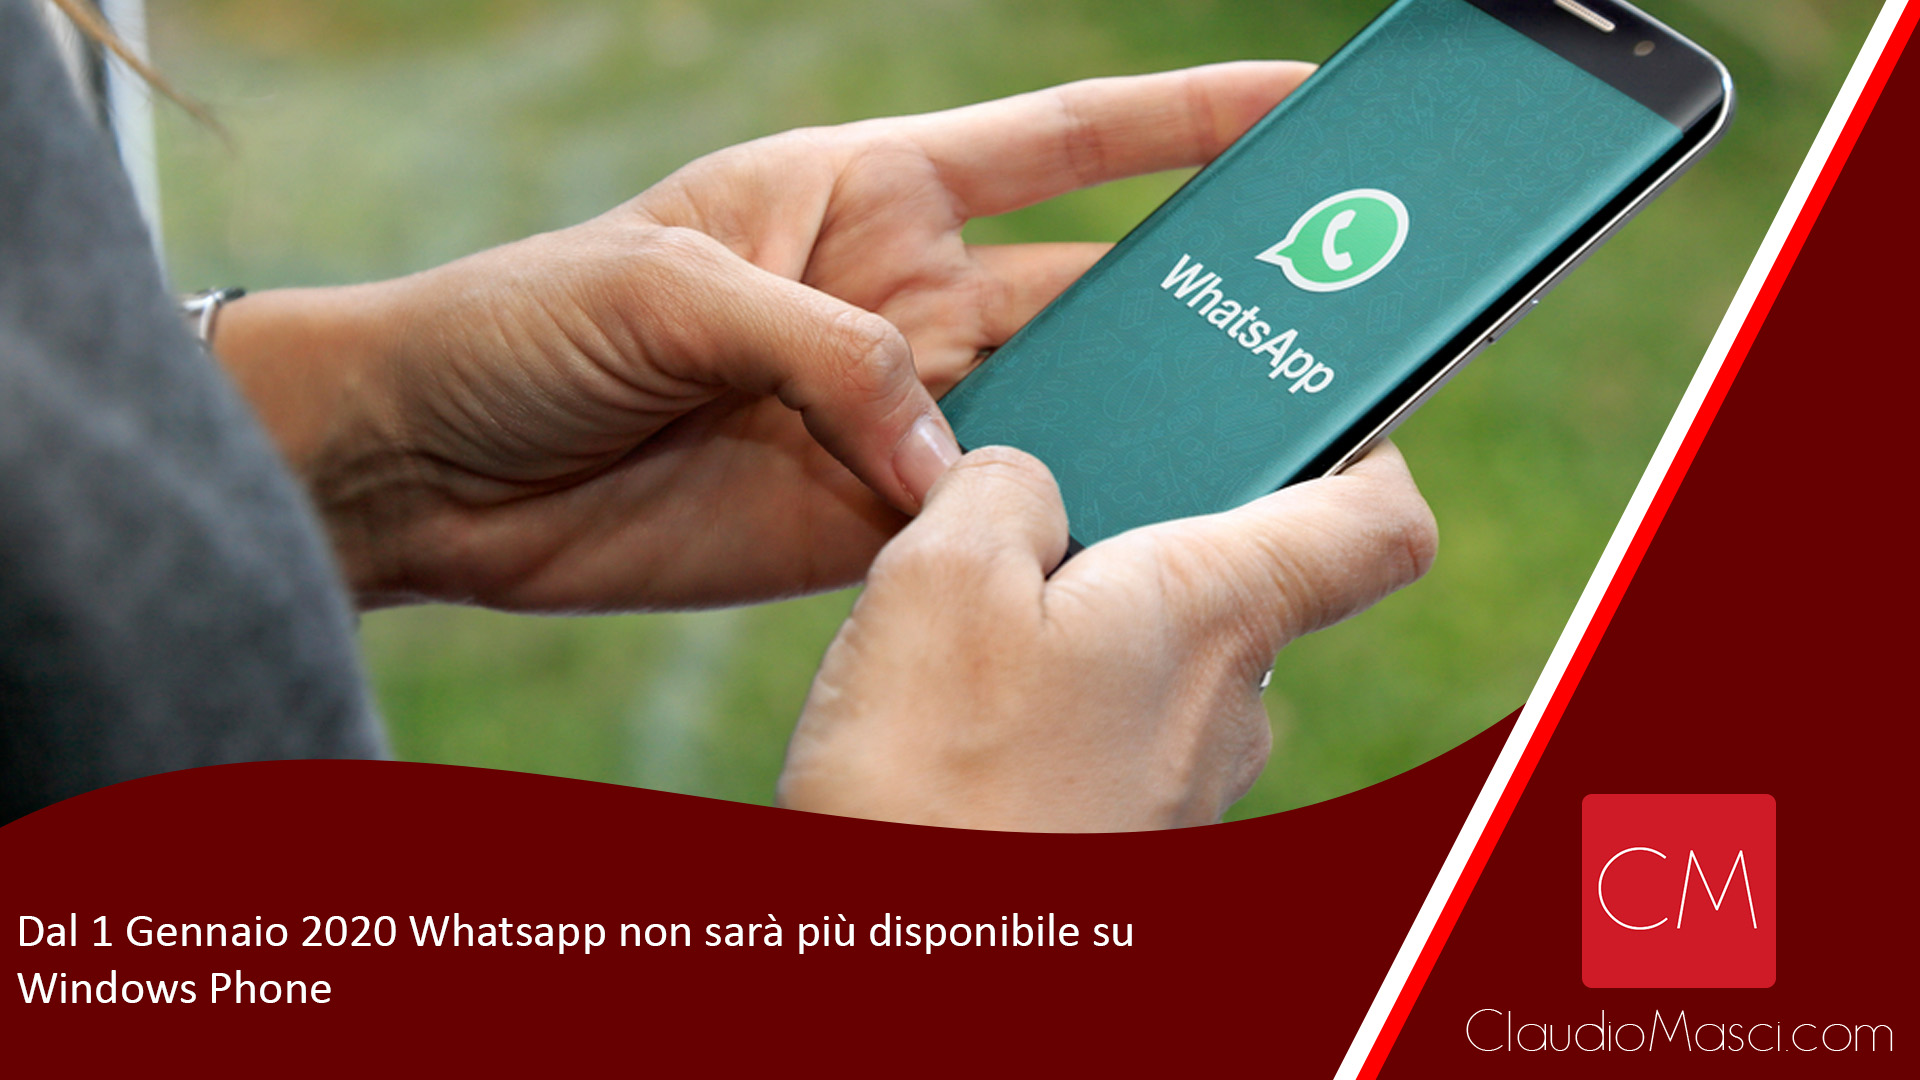 Dal 1 Gennaio 2020 Whatsapp non sarà più disponibile su Windows Phone